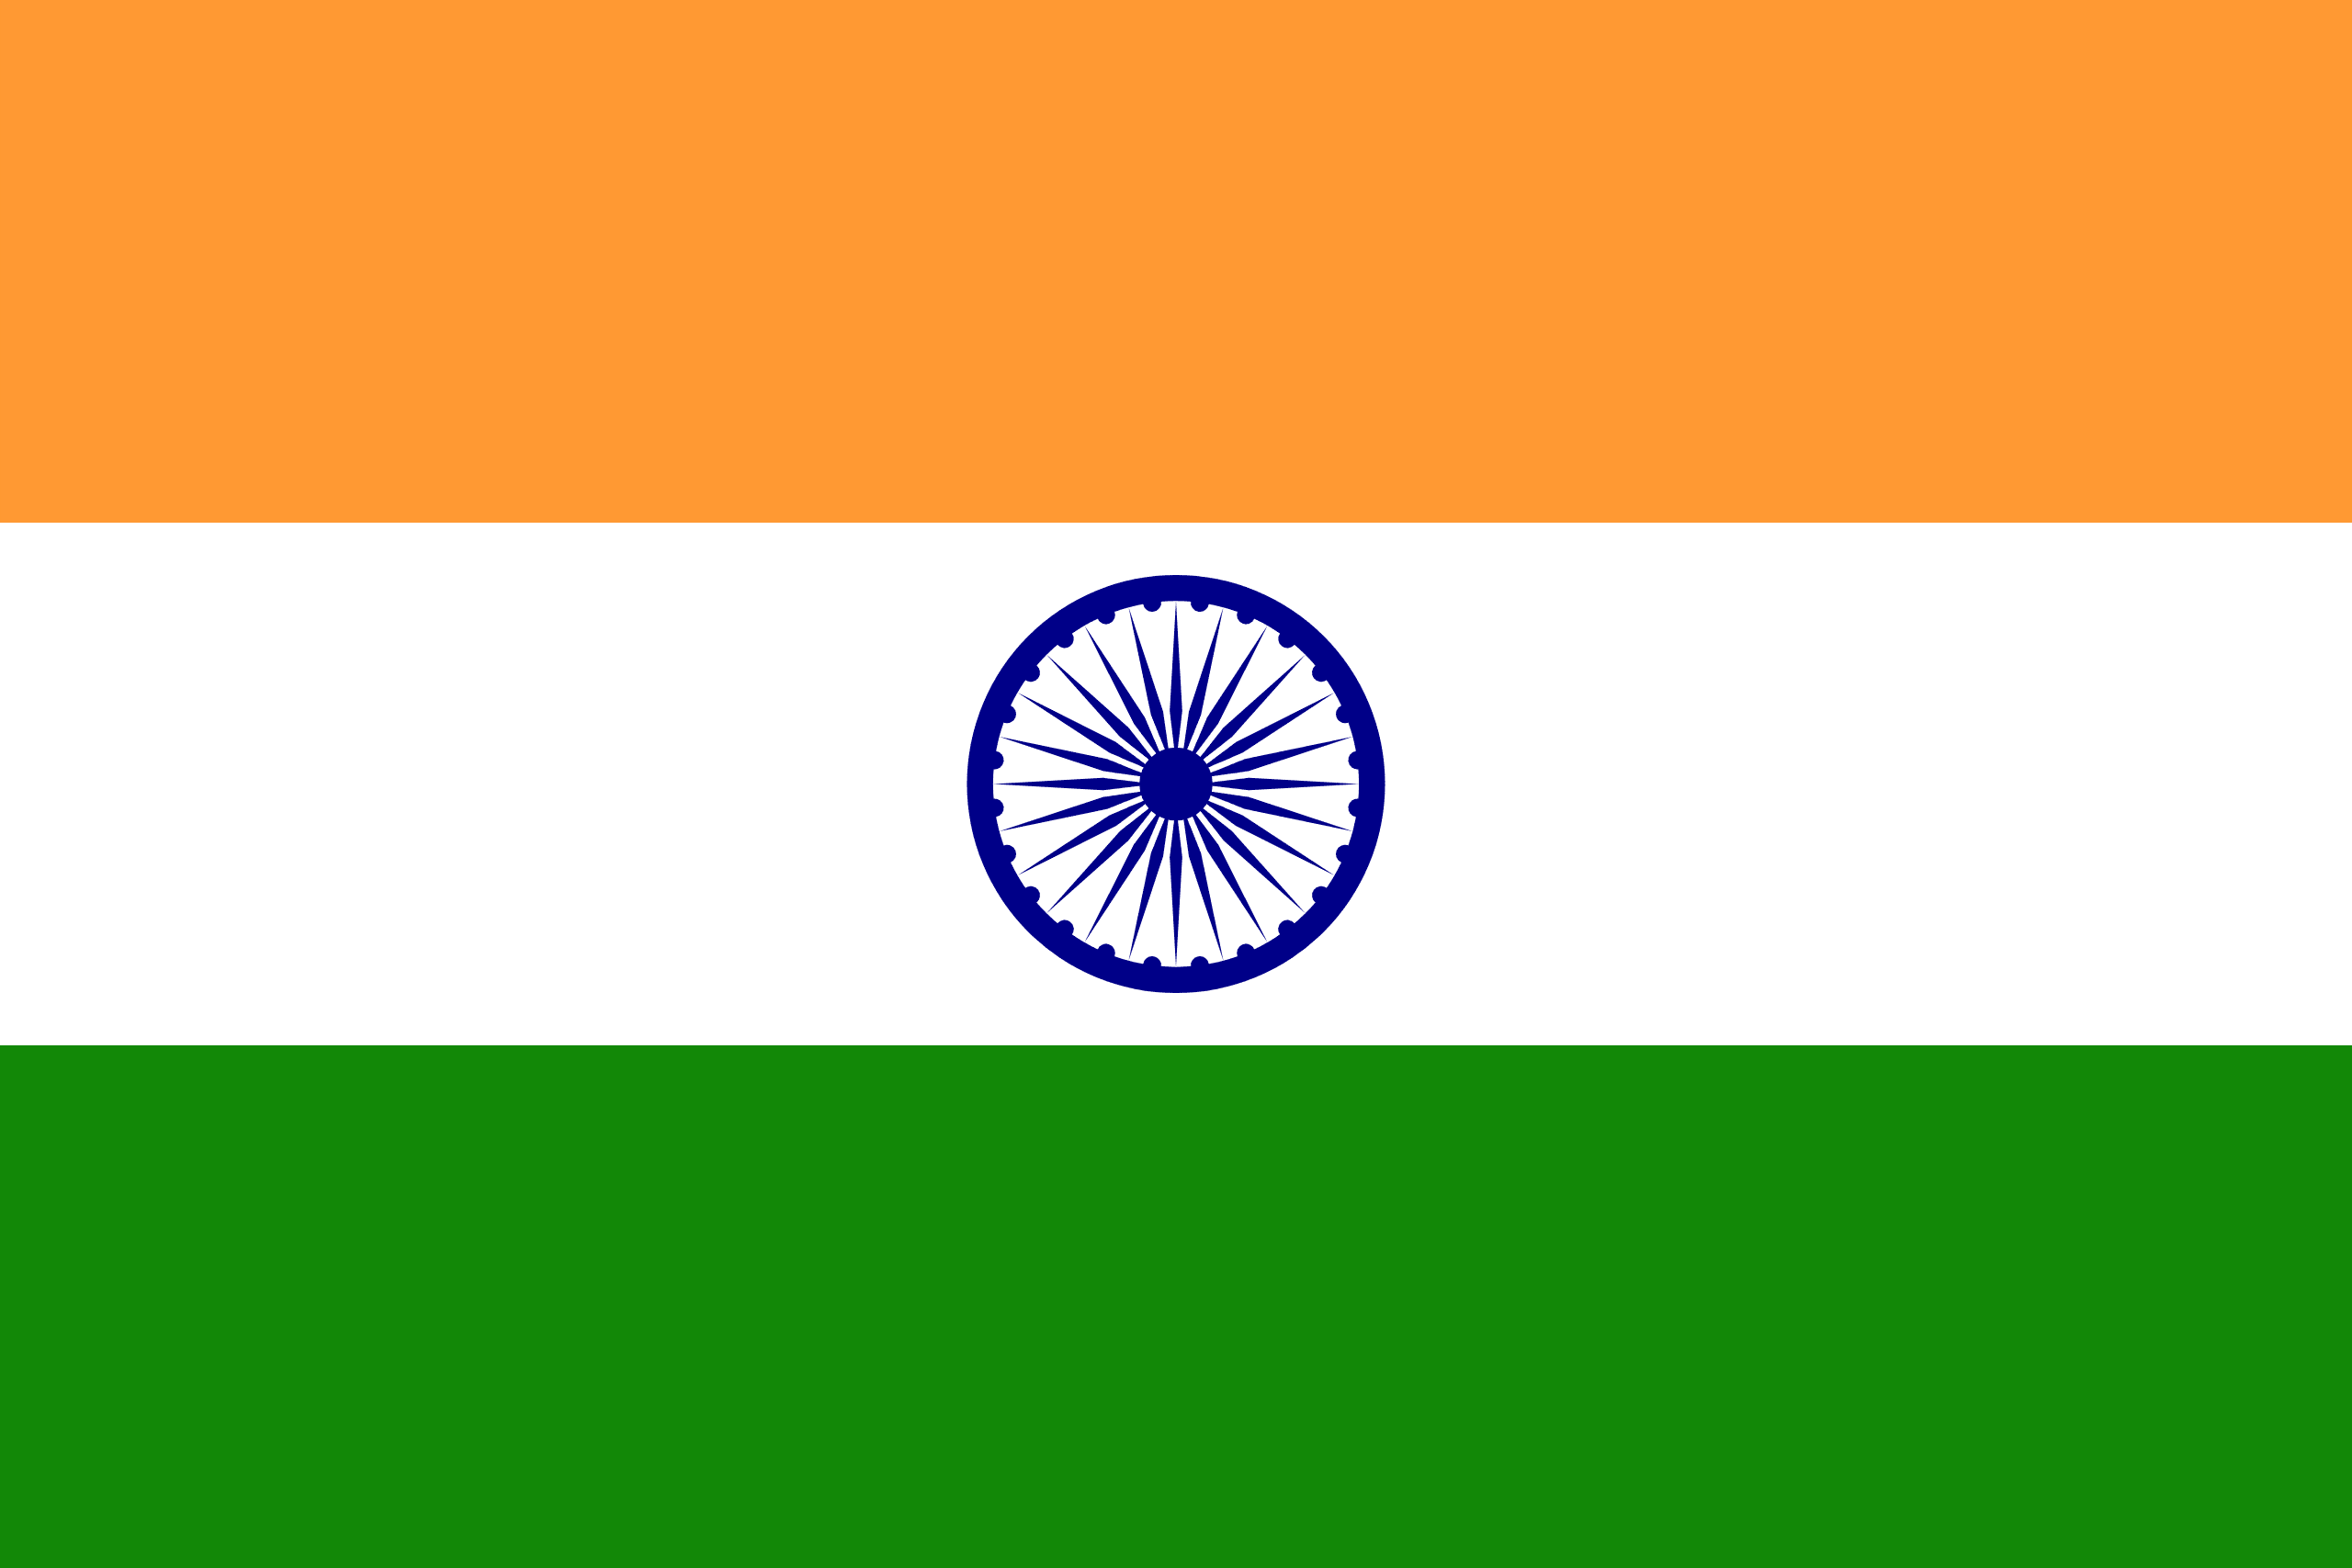 Illustration of Indian flag